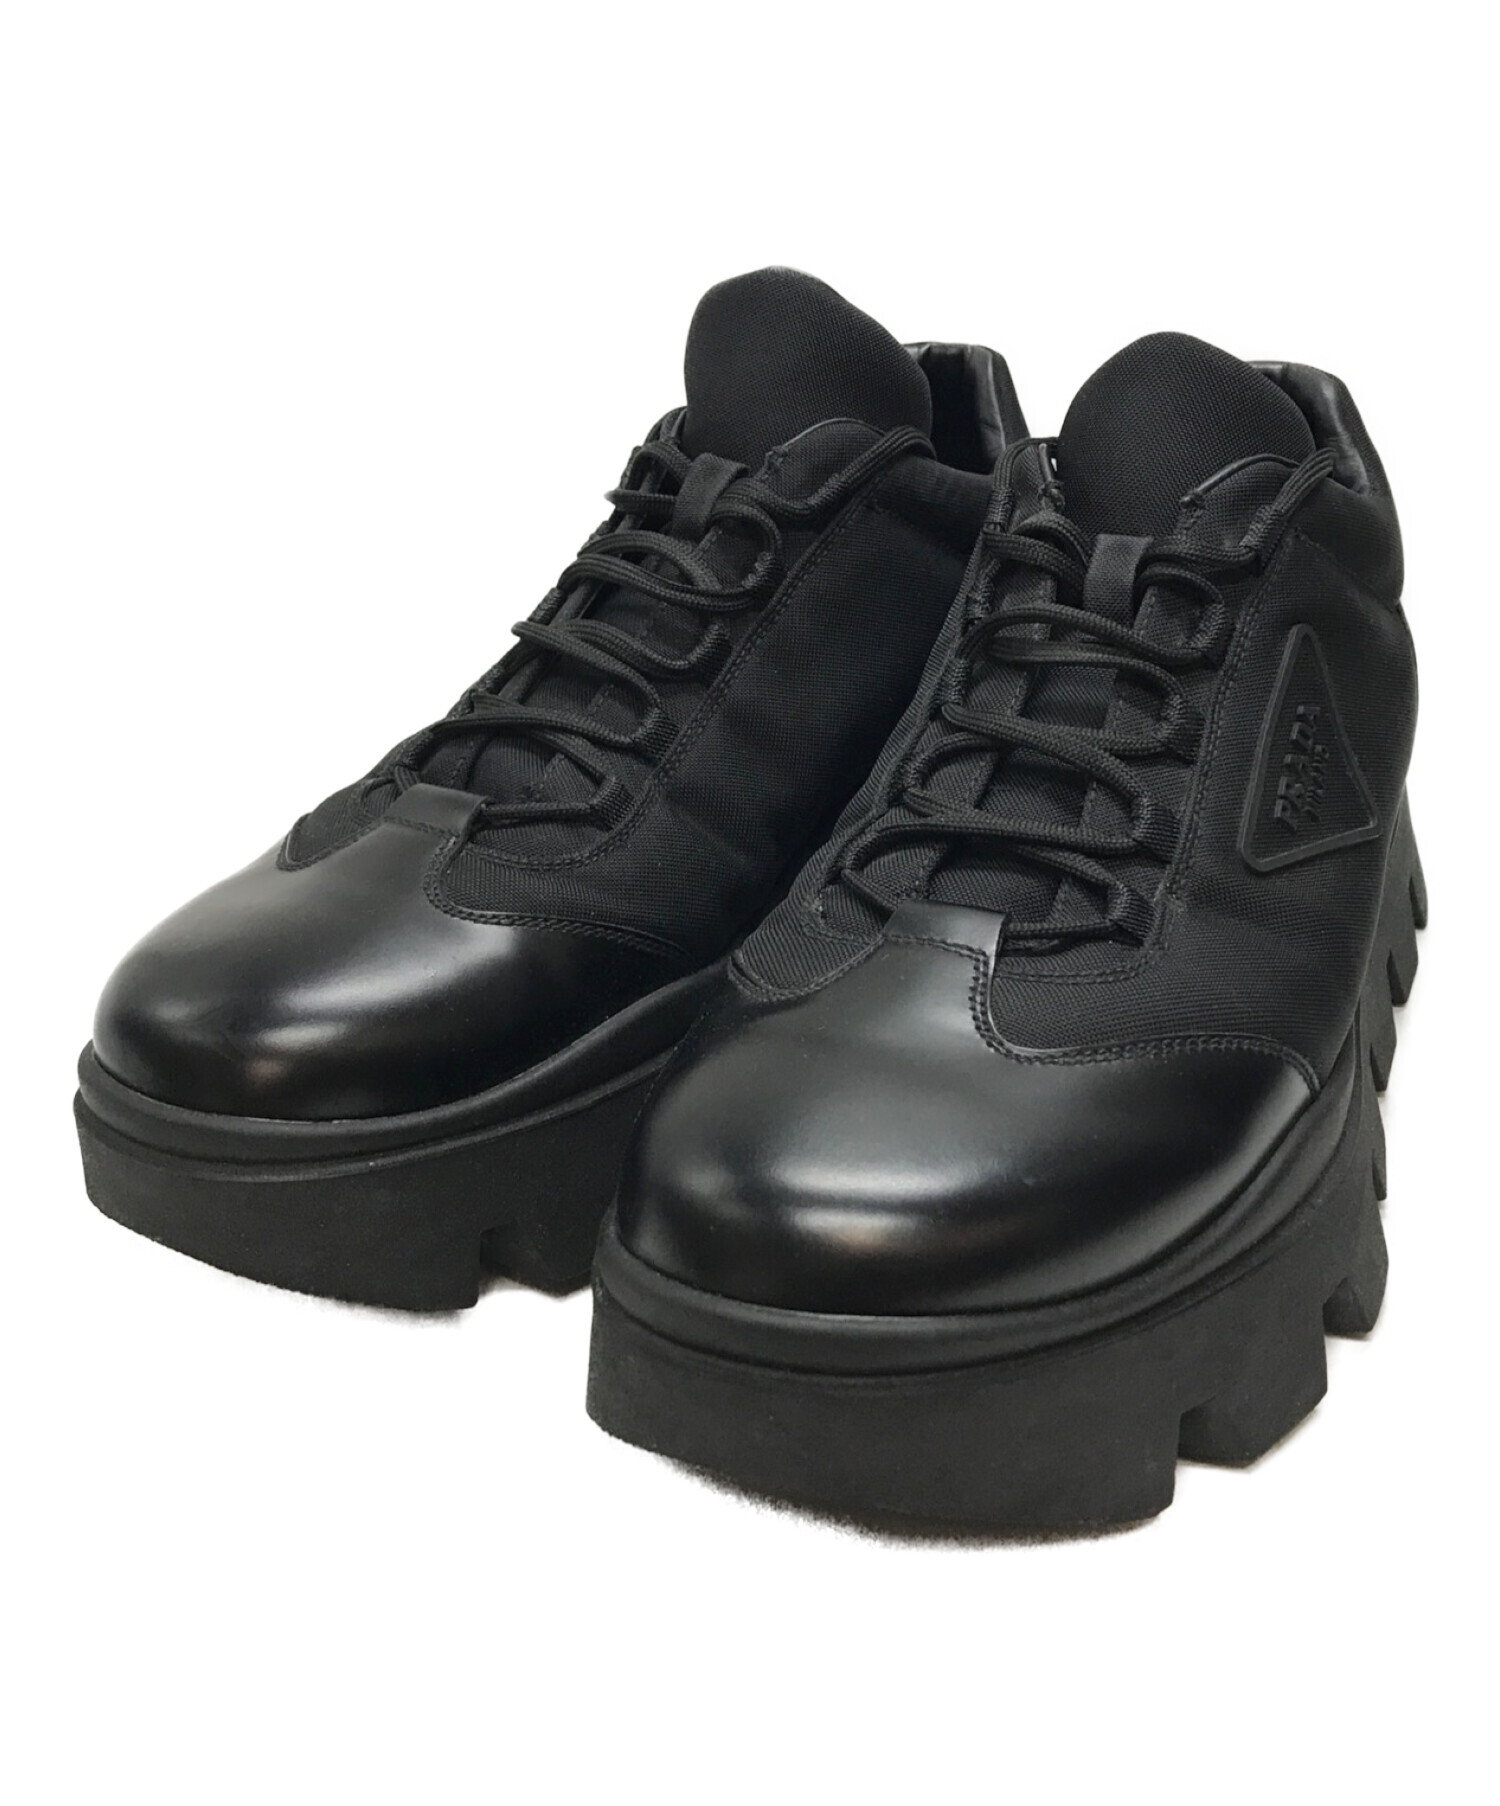 【大人気】PRADA プラダ 革靴 厚底 黒色 ブラック サイズ8